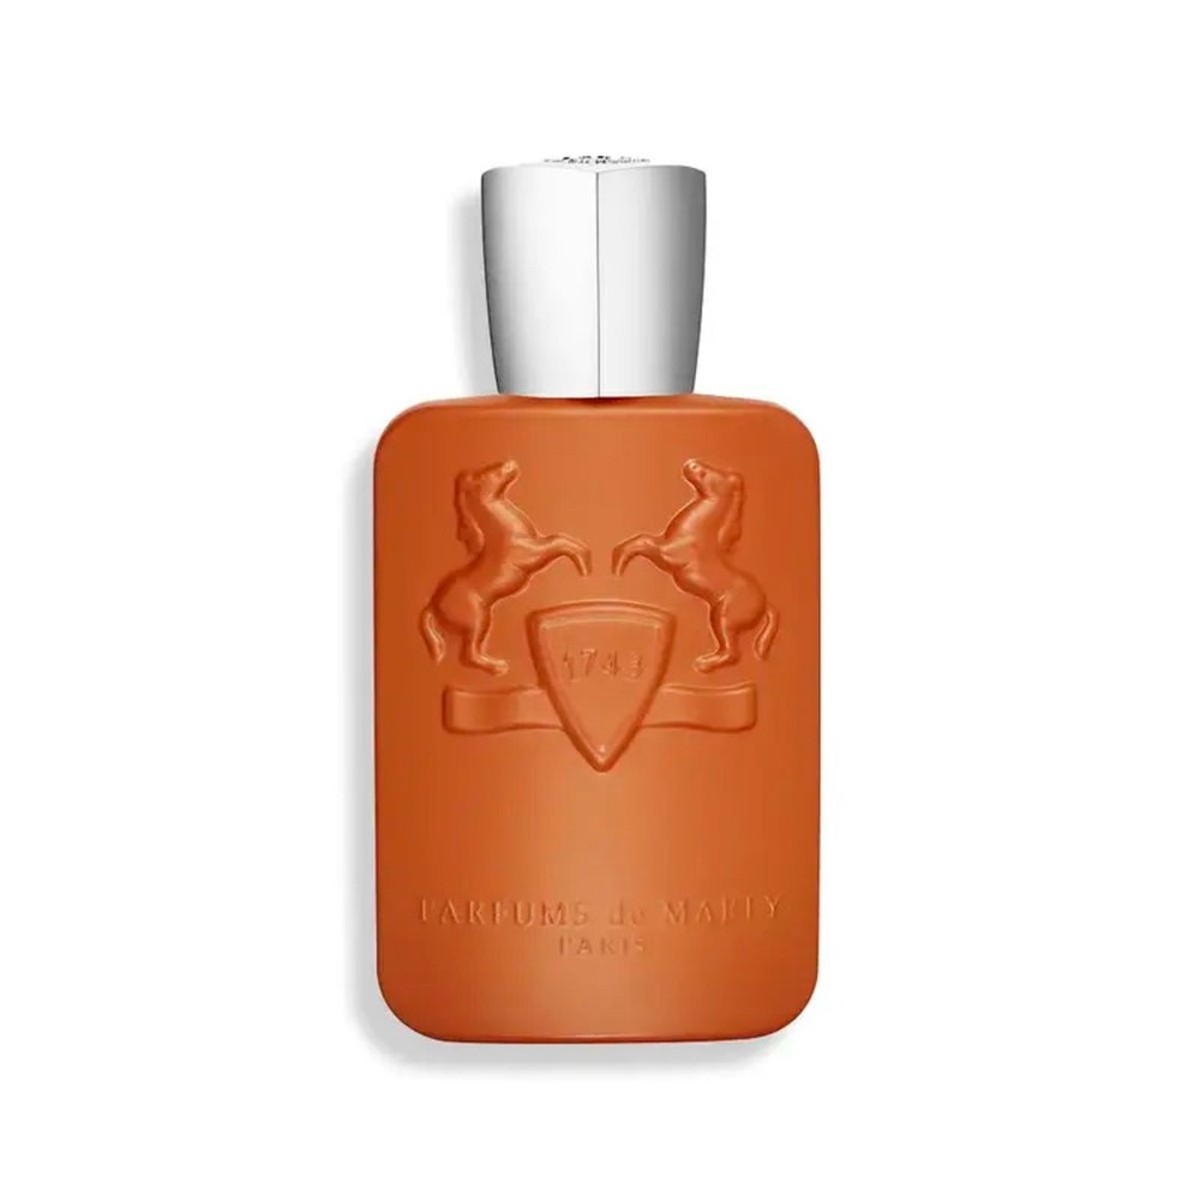 Parfum de Marly Althair Eau de Parfum - 125ml - DOLCE VITA